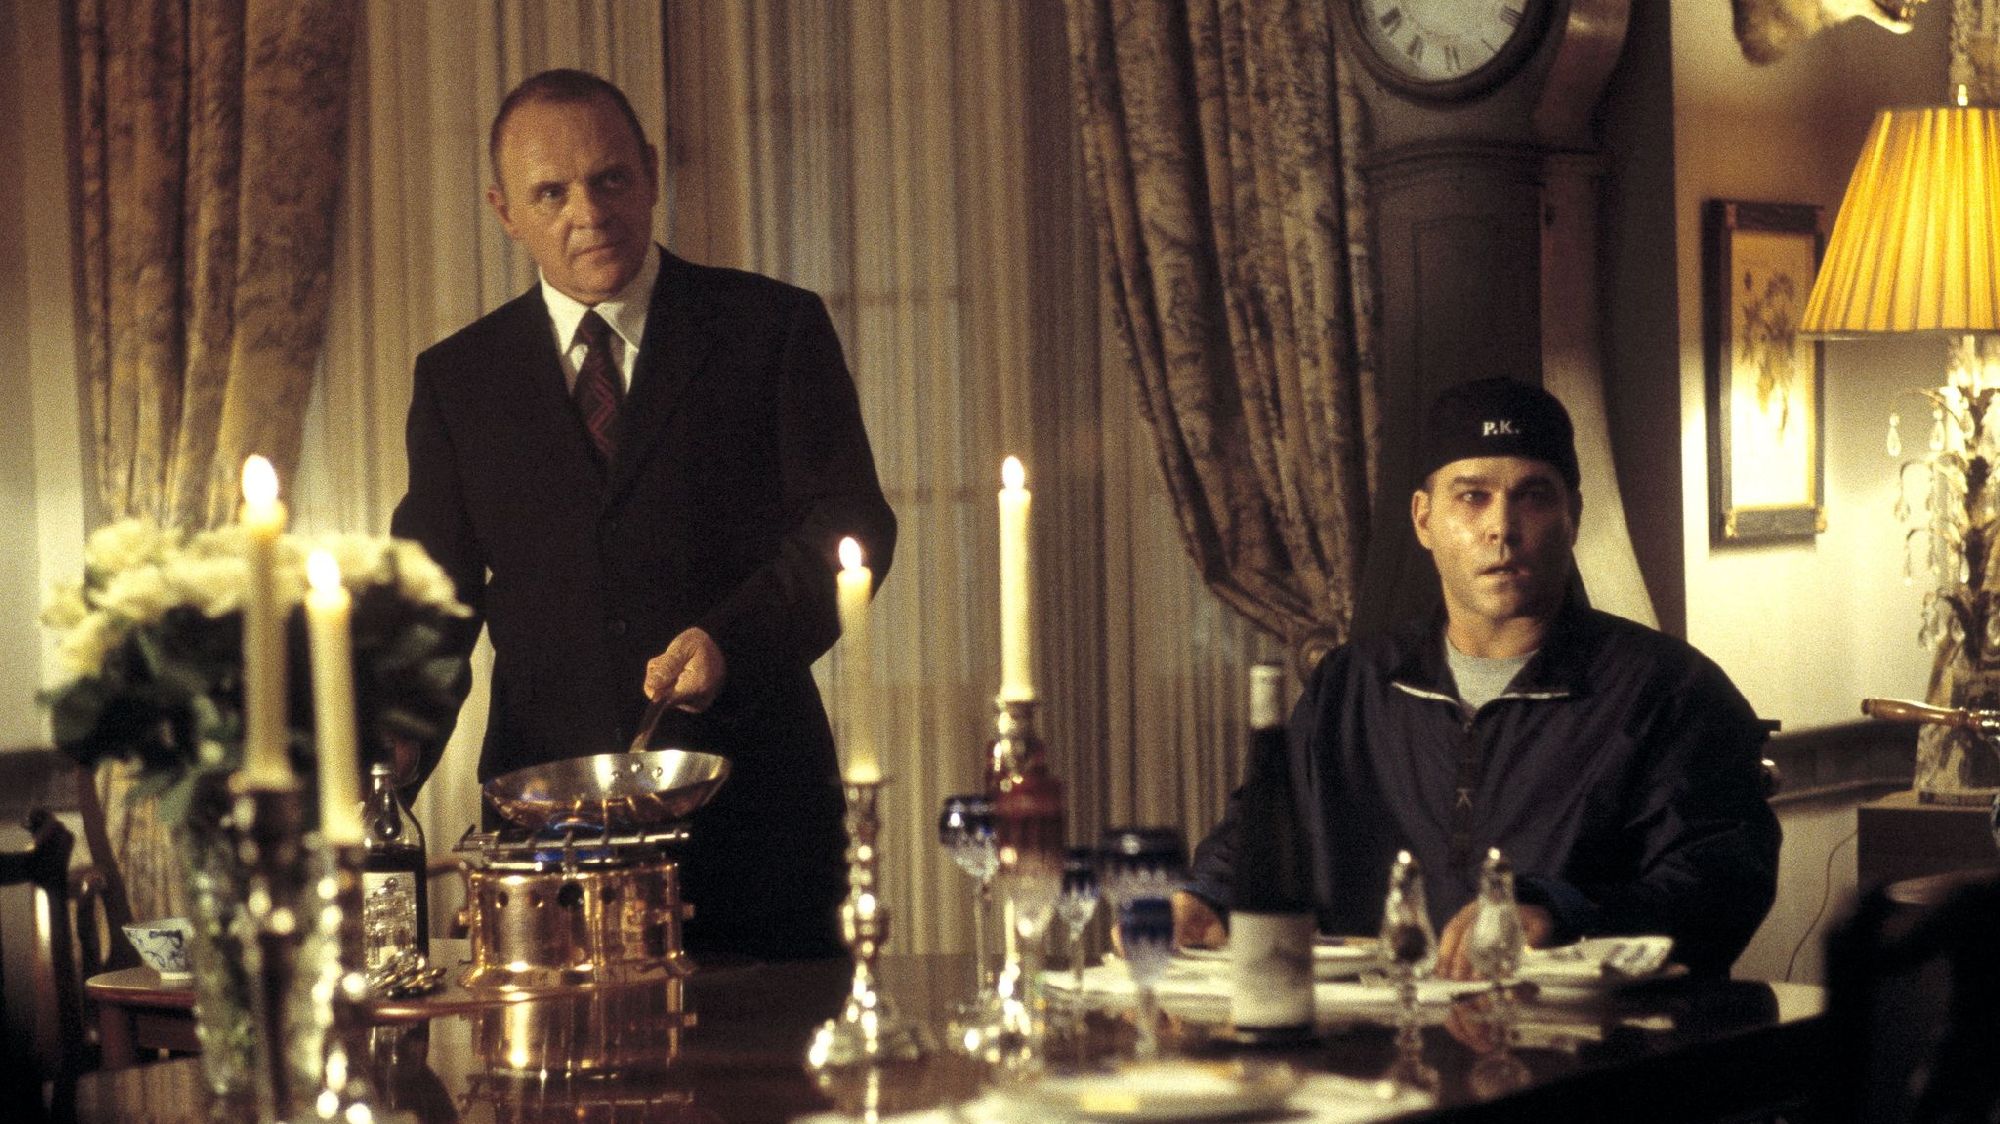 Anthony Hopkins junto a Liotta en uno de los momentos más recordados de la película "Hannibal". (Netflix)